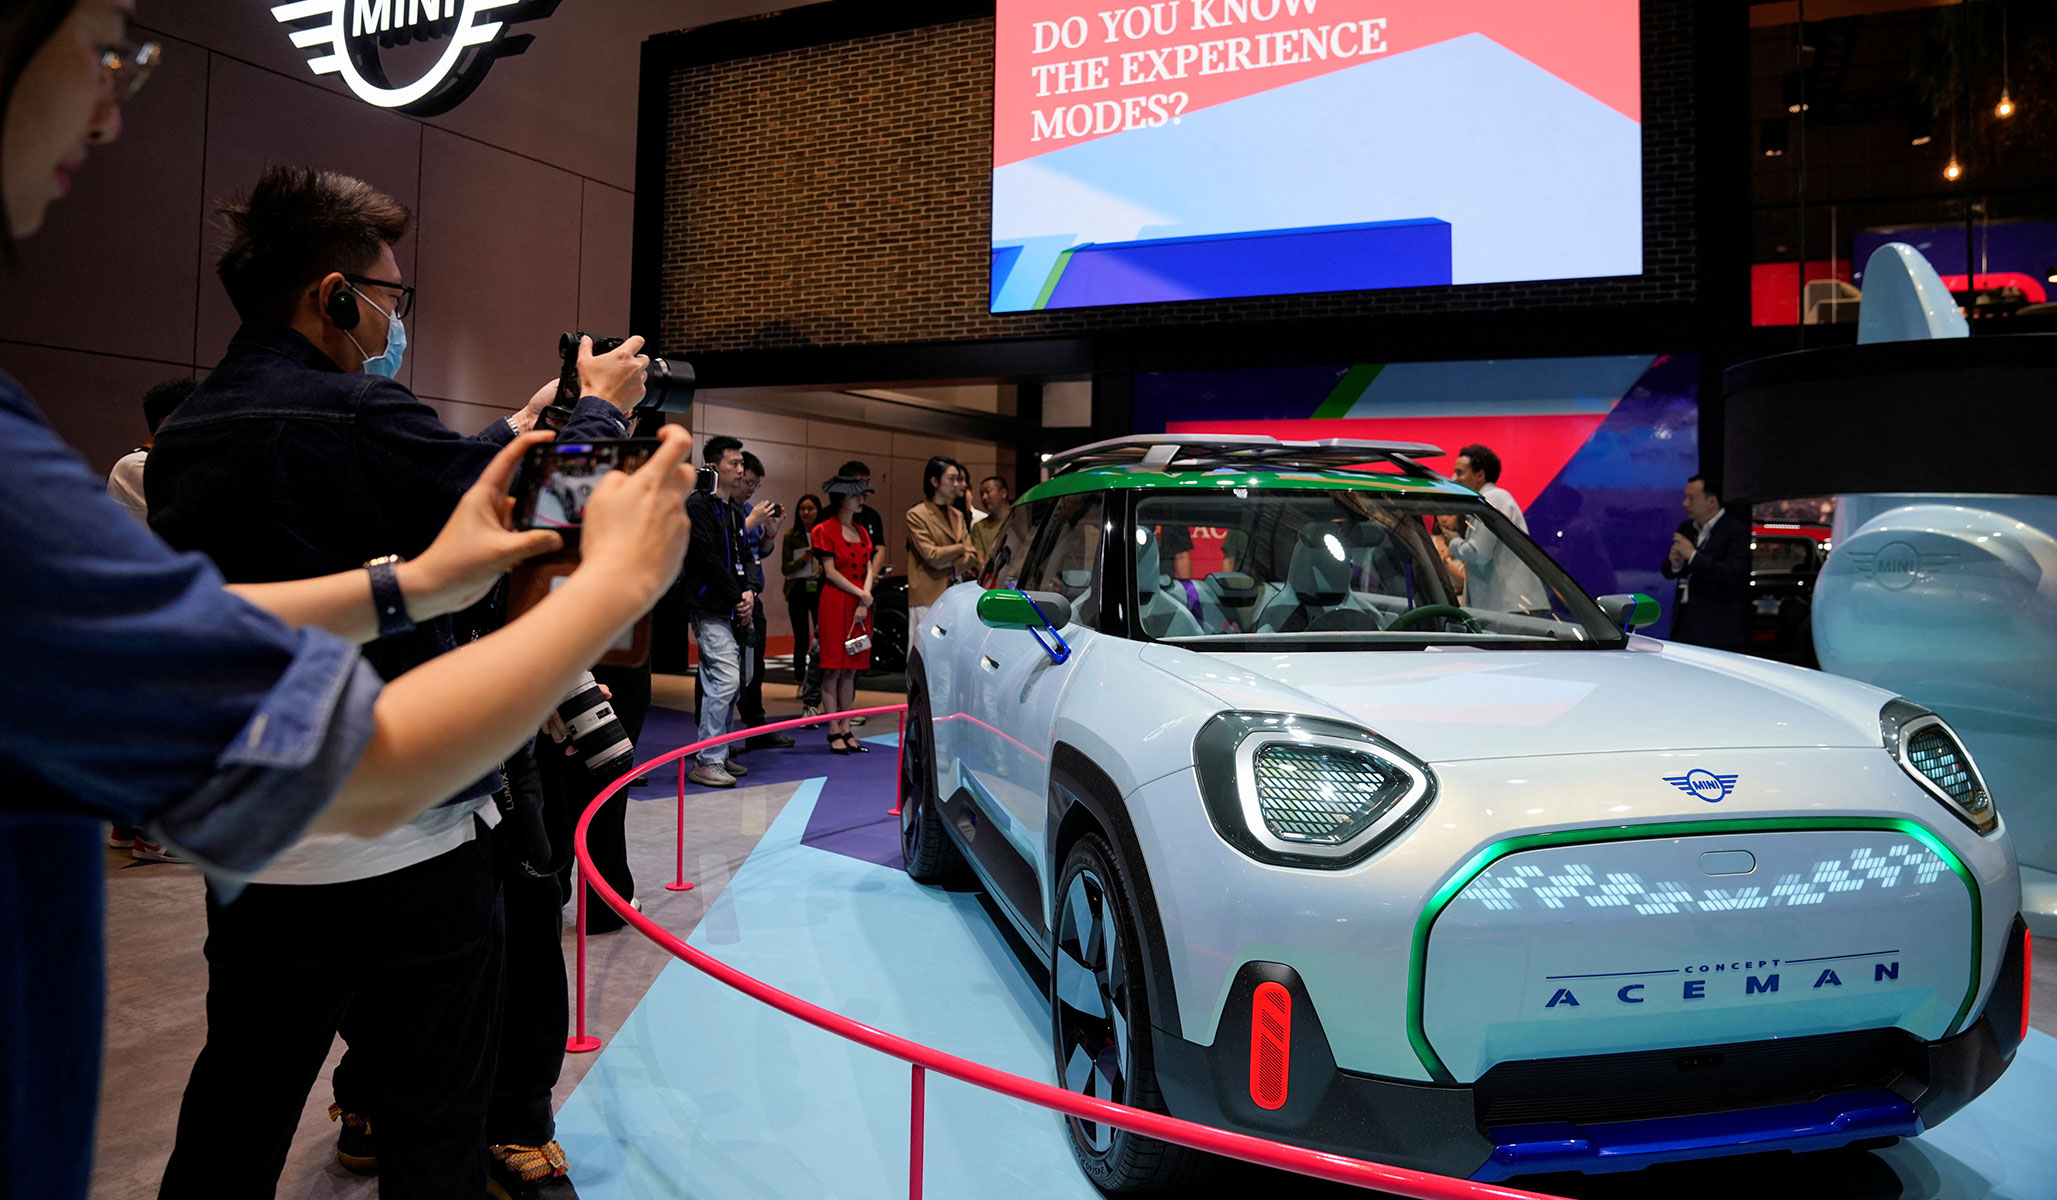 PHOTOS: 2023 Shanghai Auto Show | National Review image